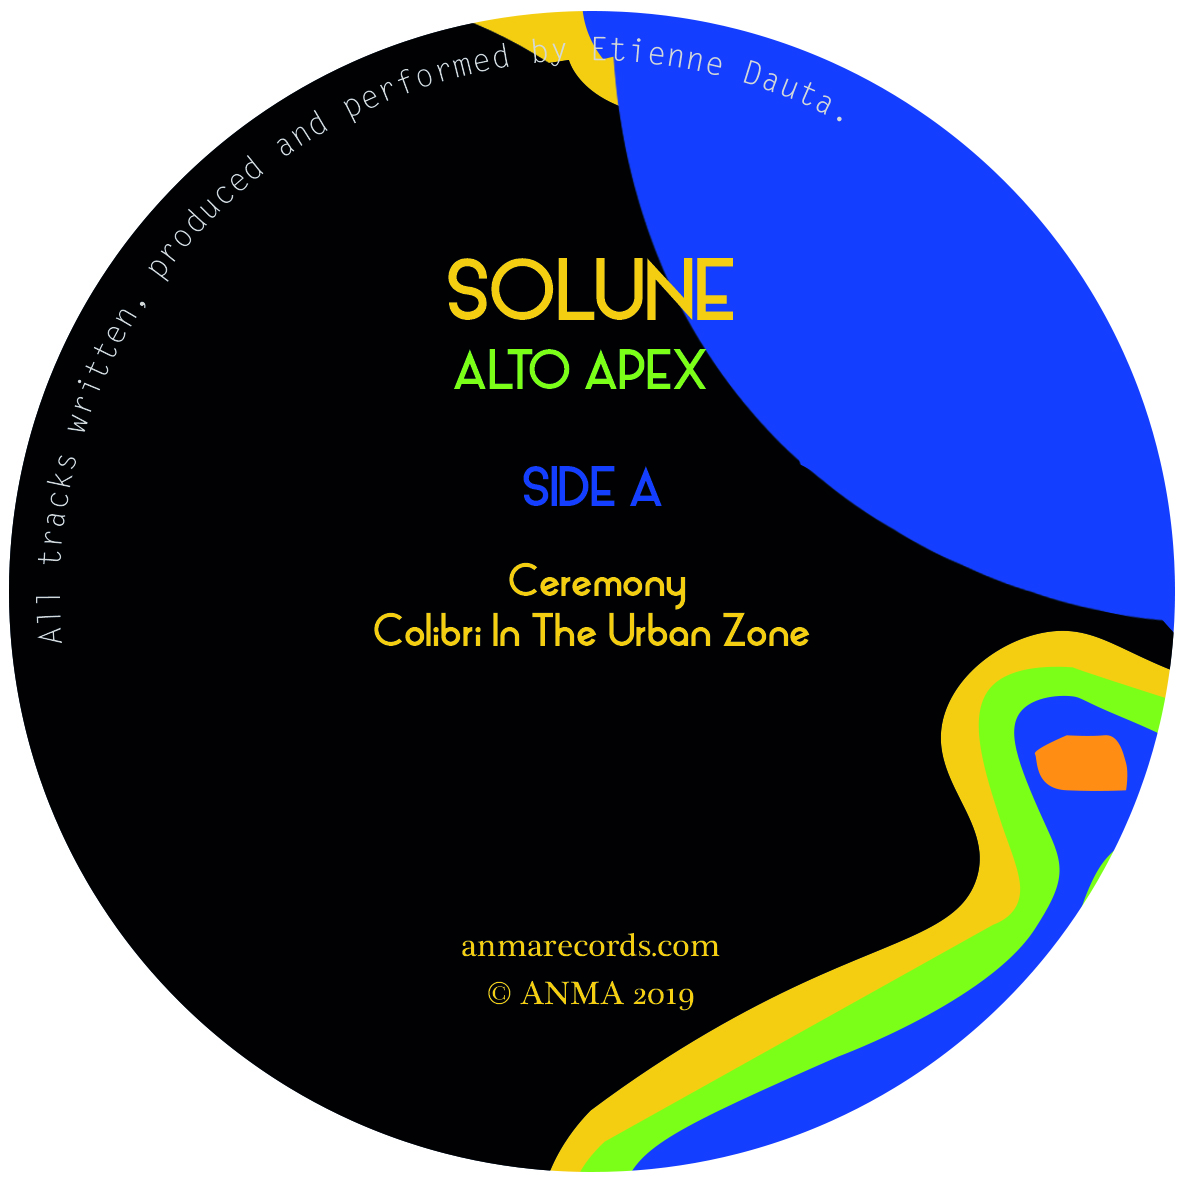 Solune/ALTO APEX EP 12"